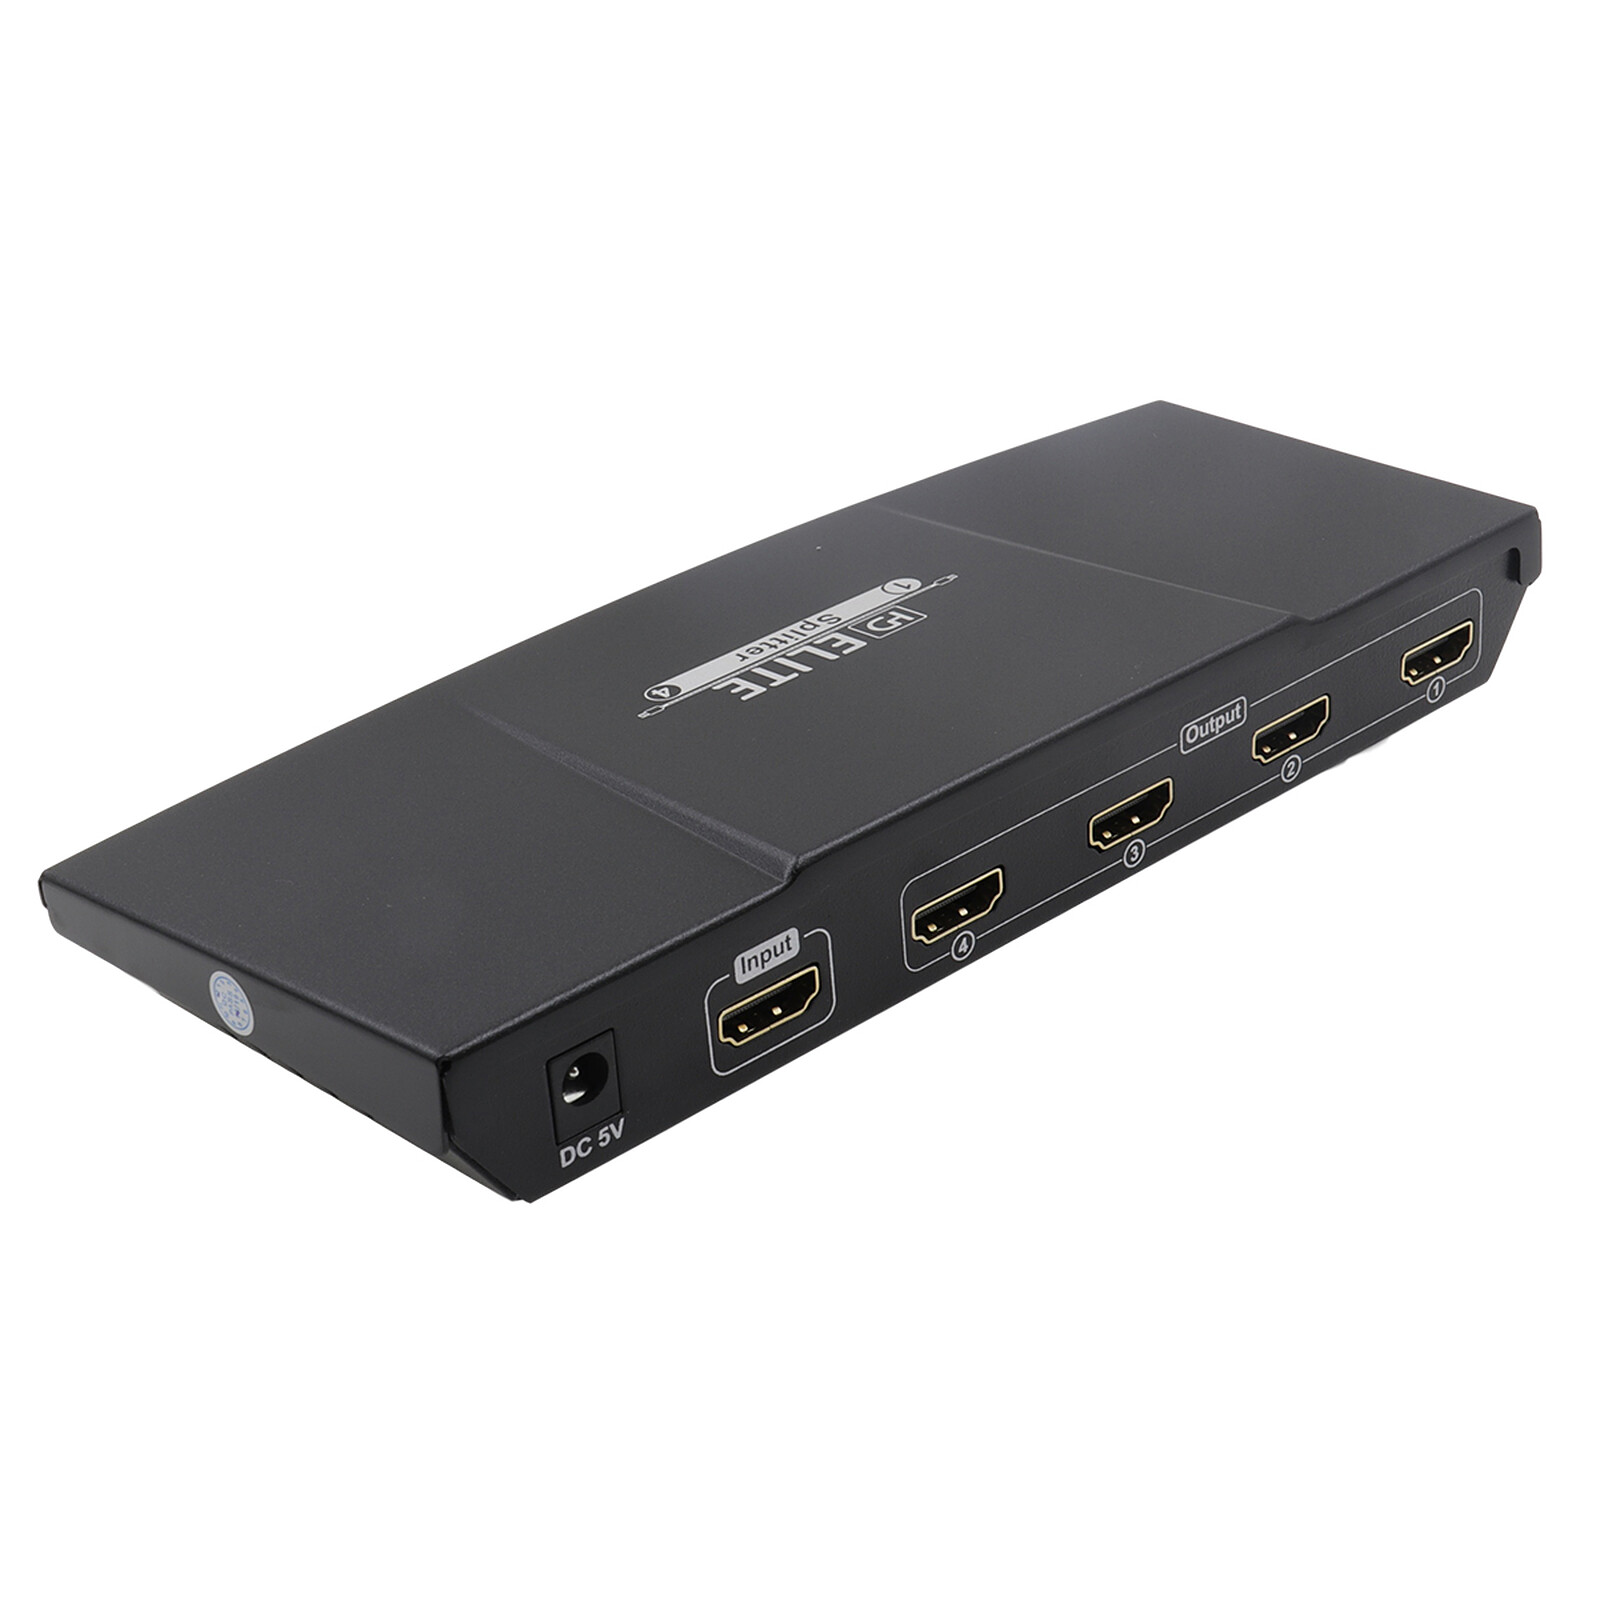 Séparateur HDMI 4K 4 ports - VS184A, ATEN Répartiteurs vidéo